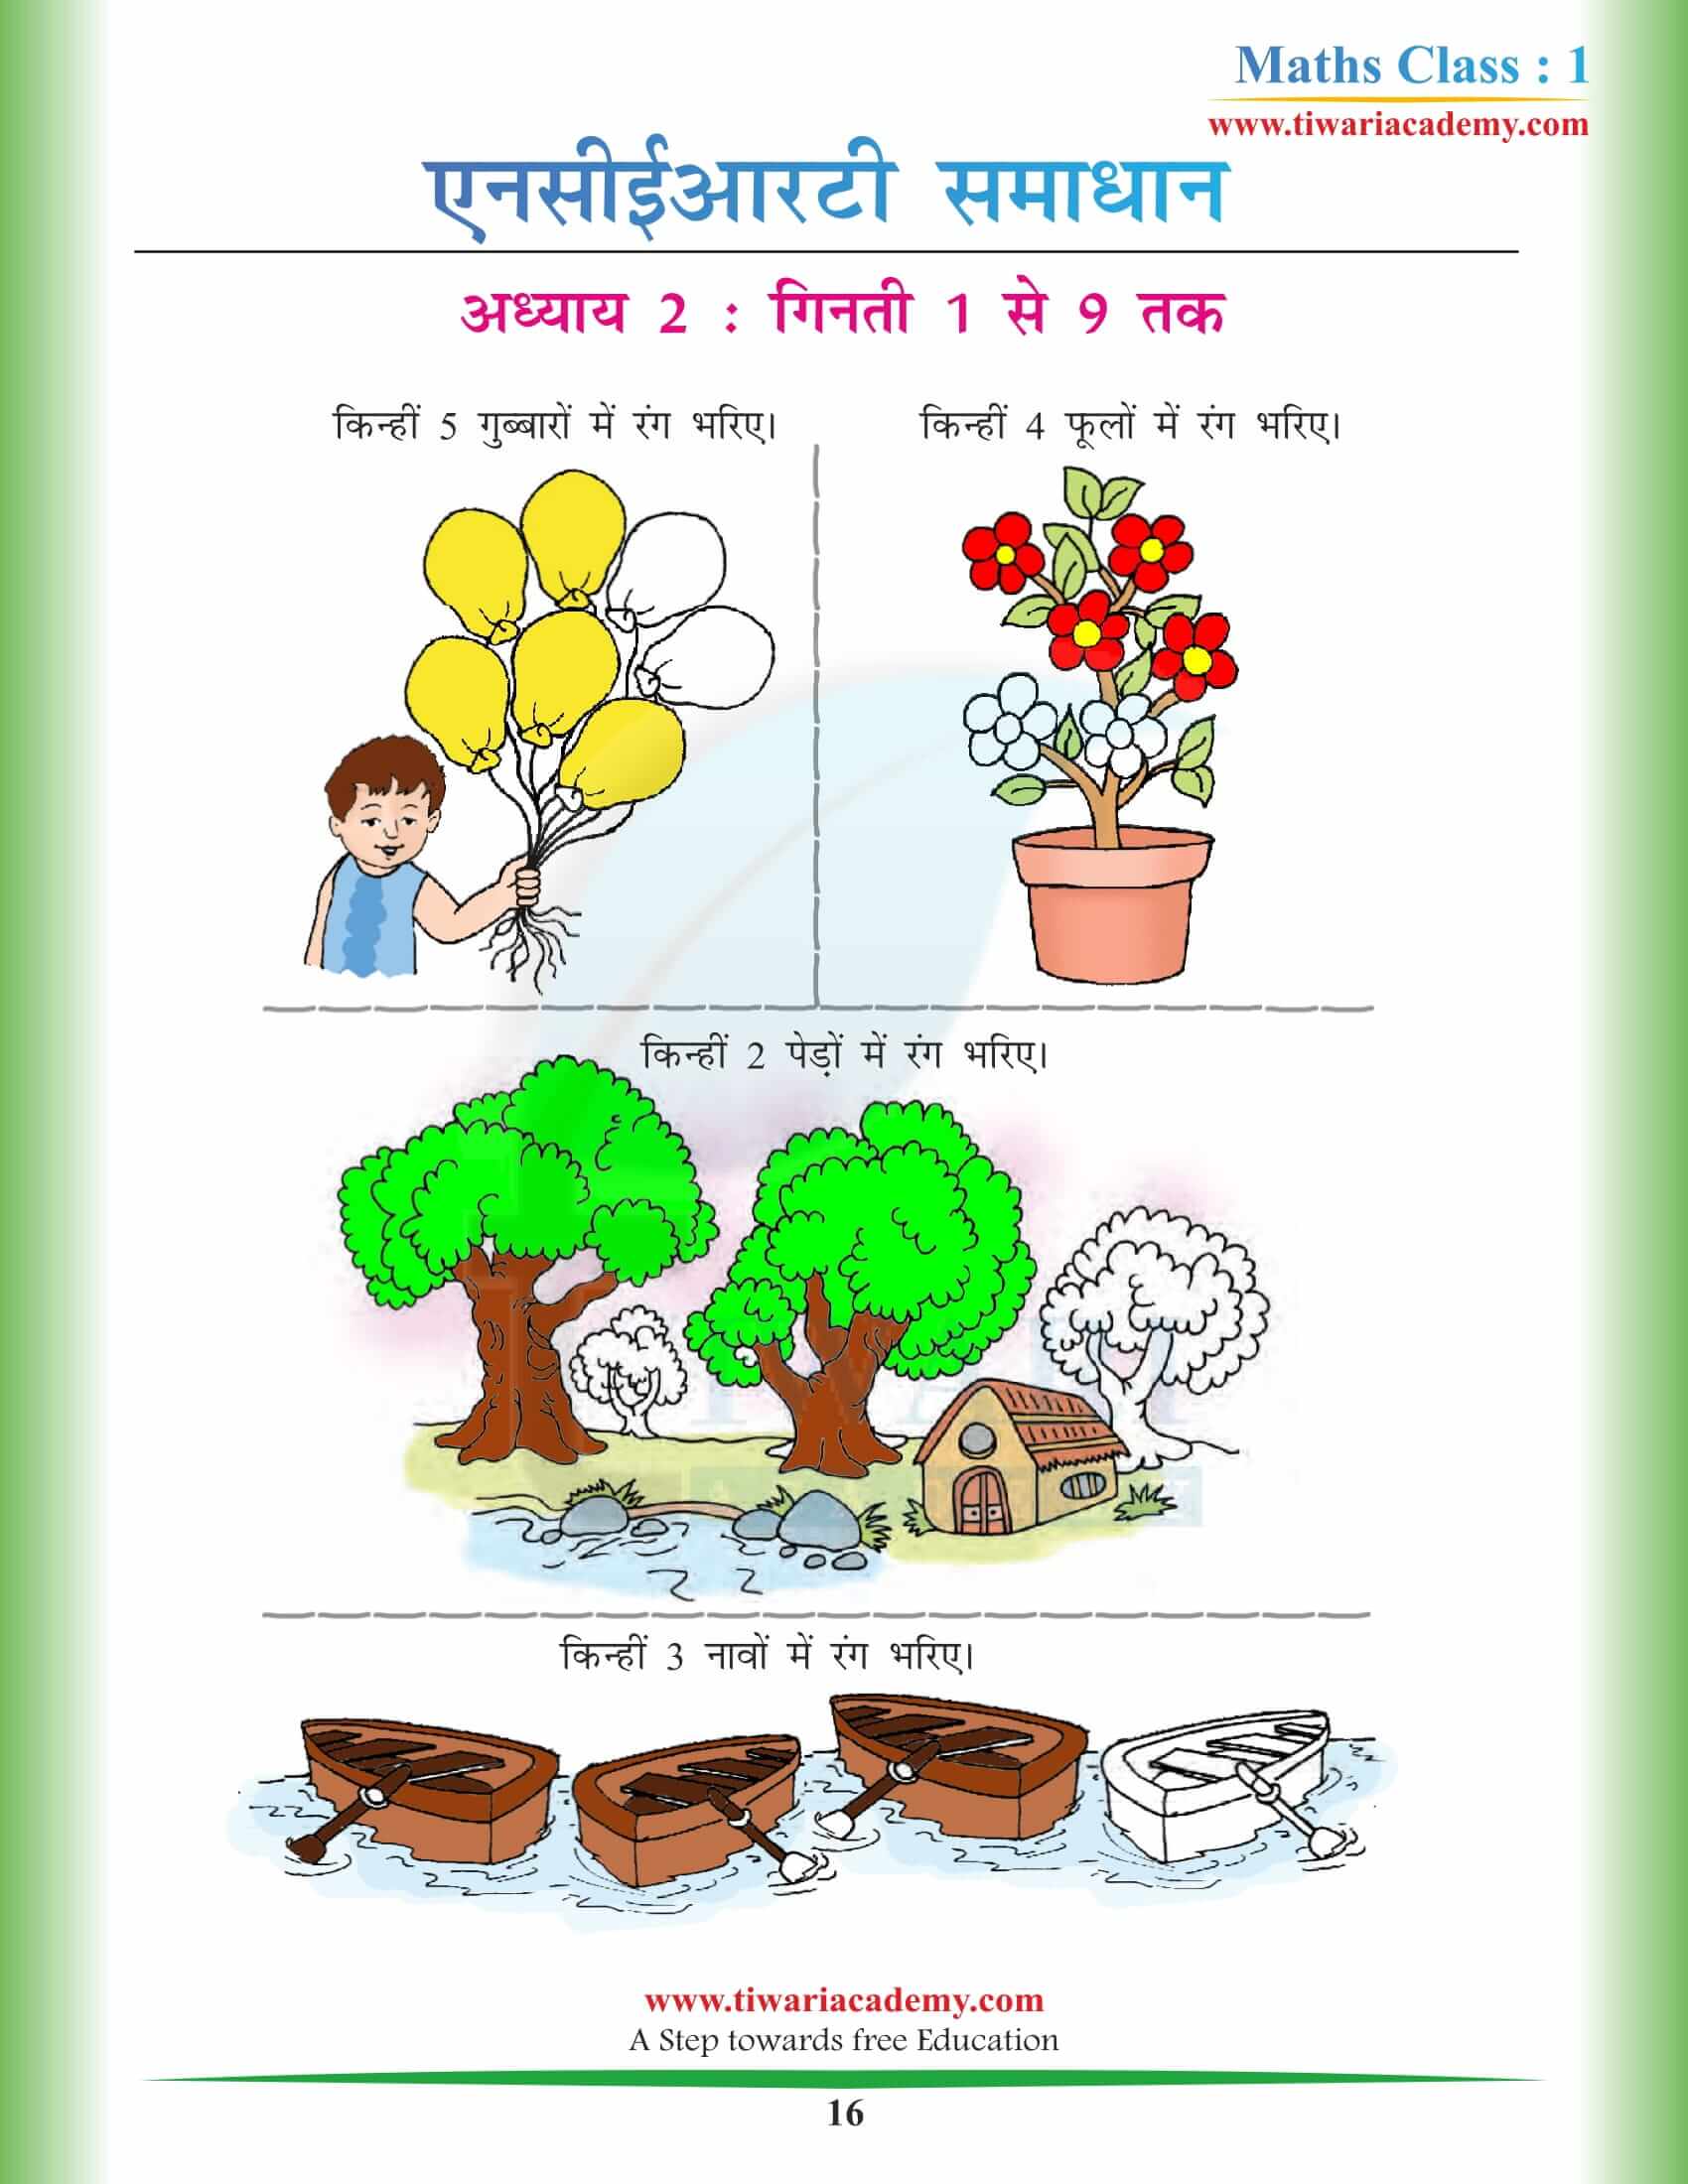 कक्षा 1 गणित अध्याय 2 एनसीईआरटी समाधान हिंदी में डाउनलोड